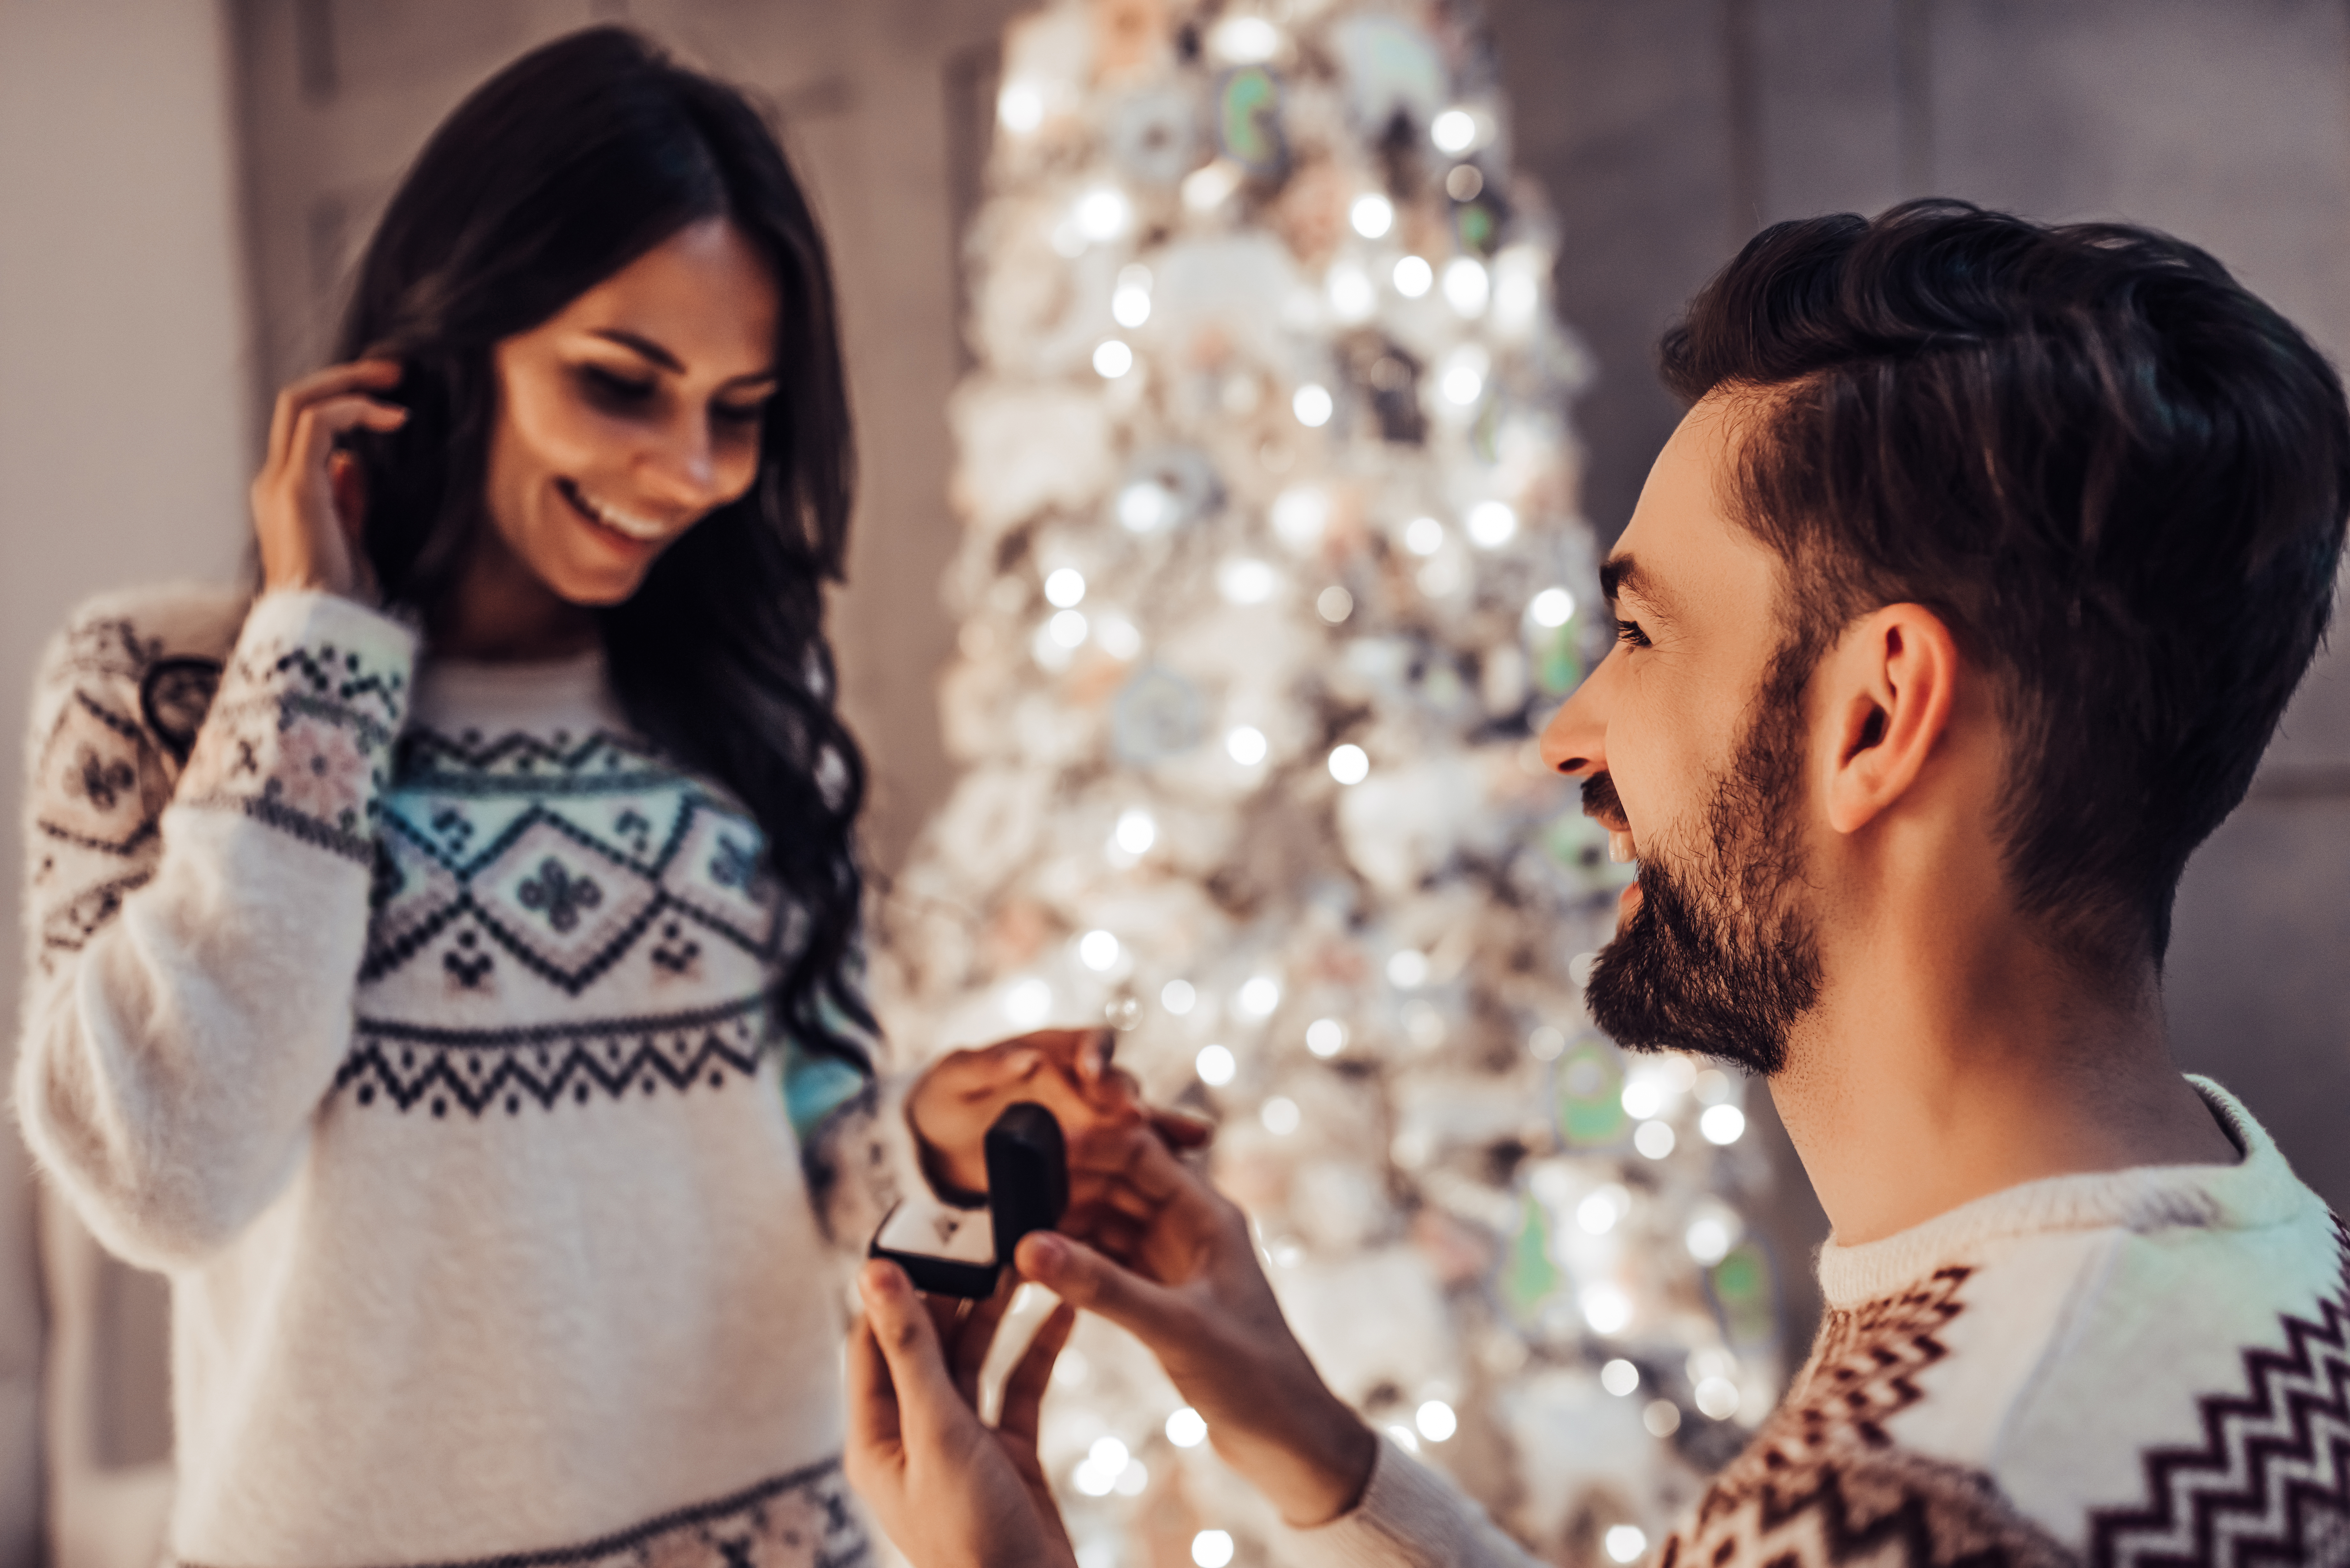 Un homme demande sa petite amie en mariage à Noël | Source : Shutterstock